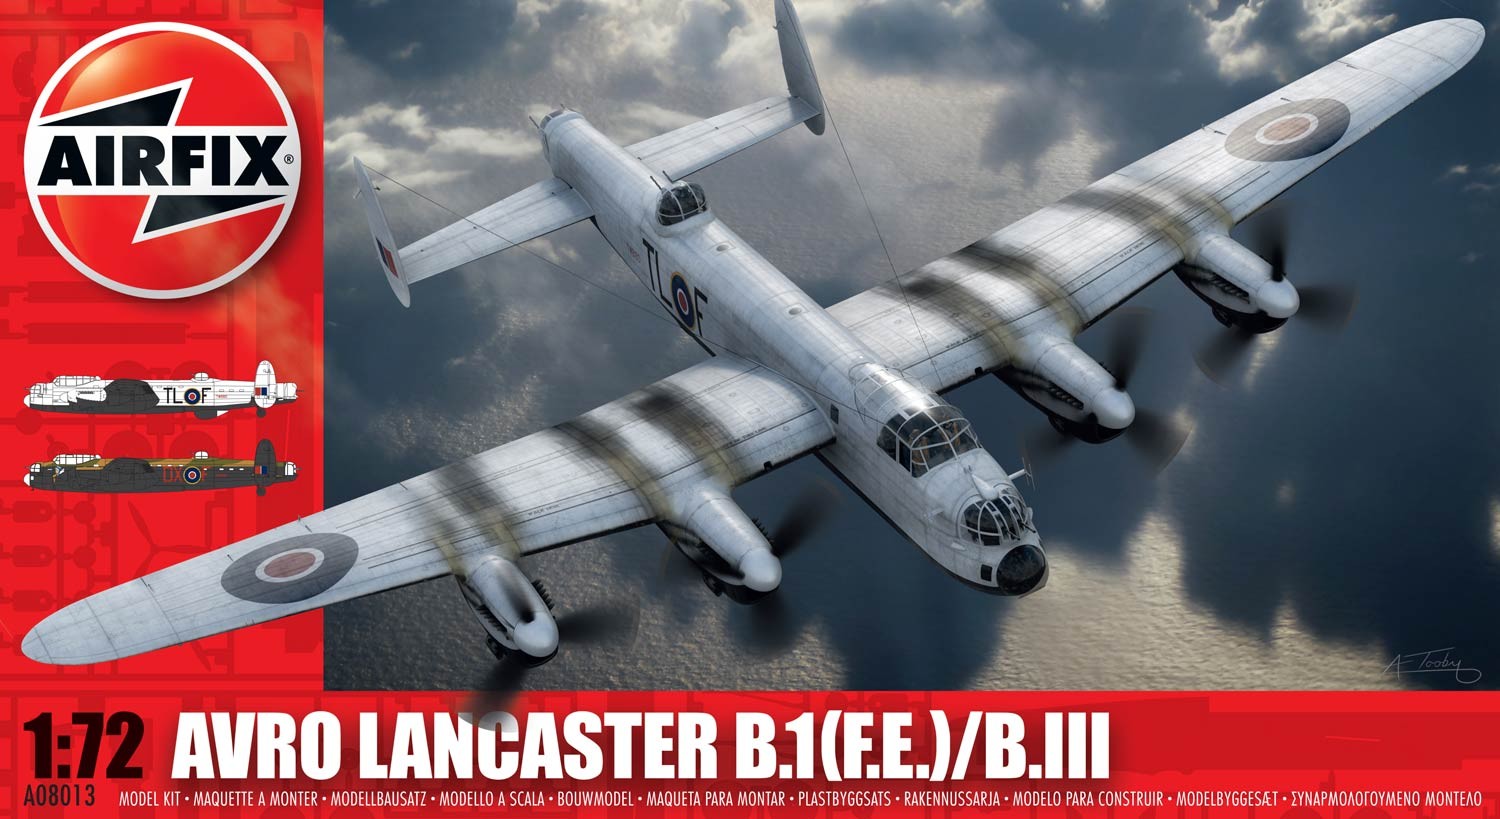 Airfix Avro Lancaster BI -F.E. - BIII in 1:72 bouwpakket